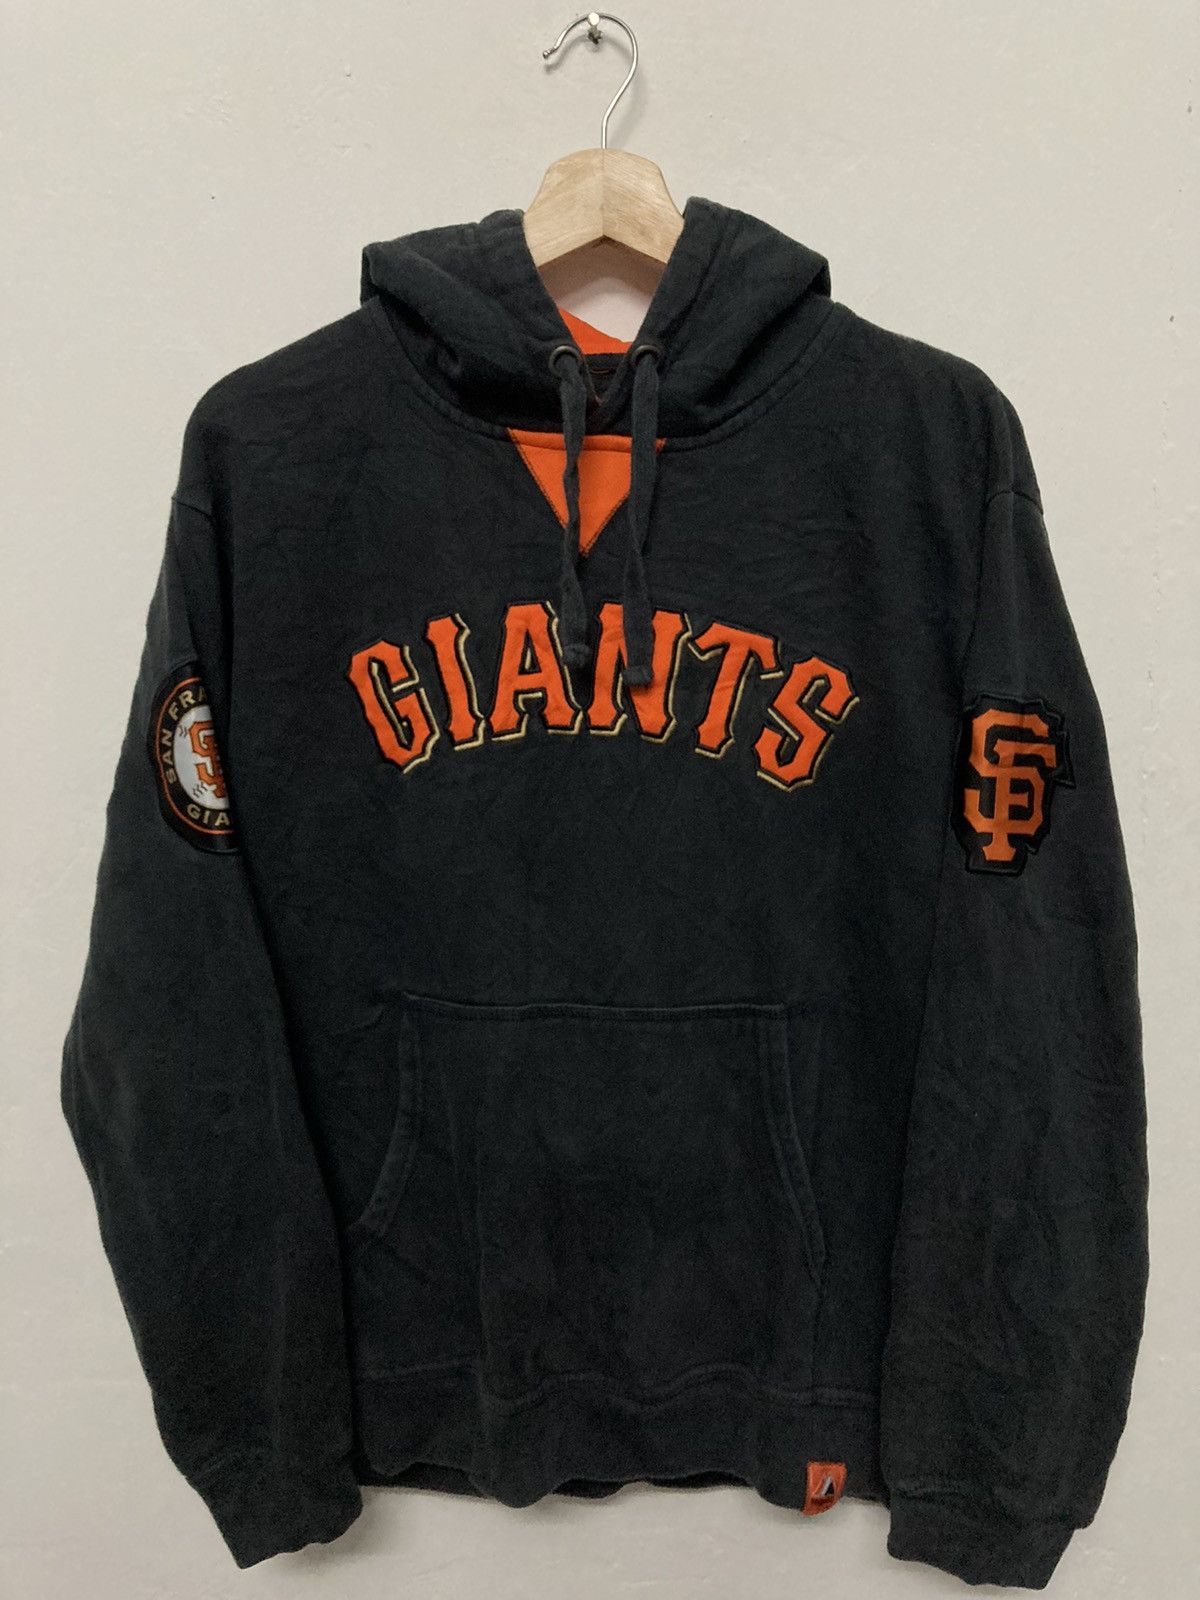 Vintage San Francisco Giants Hoodie, Majestic tag